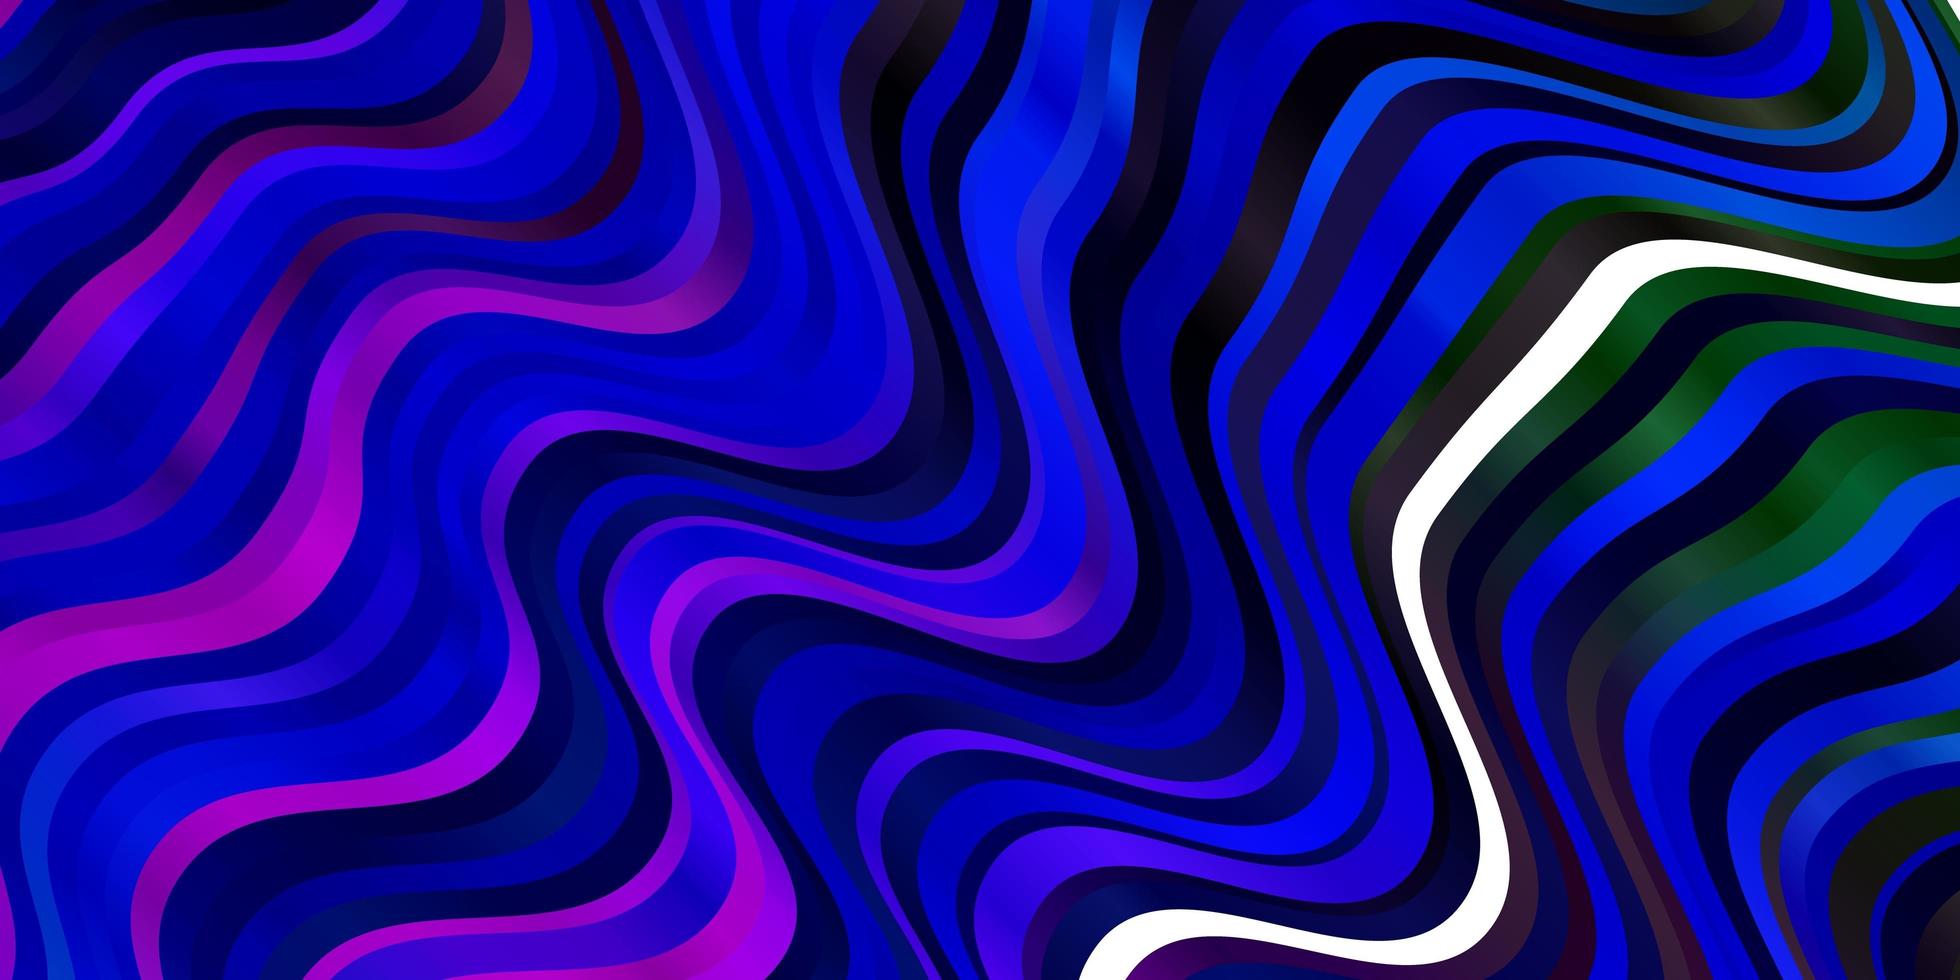 sfondo vettoriale rosa scuro, blu con linee piegate. illustrazione colorata in stile astratto con linee piegate. modello per cellulari.